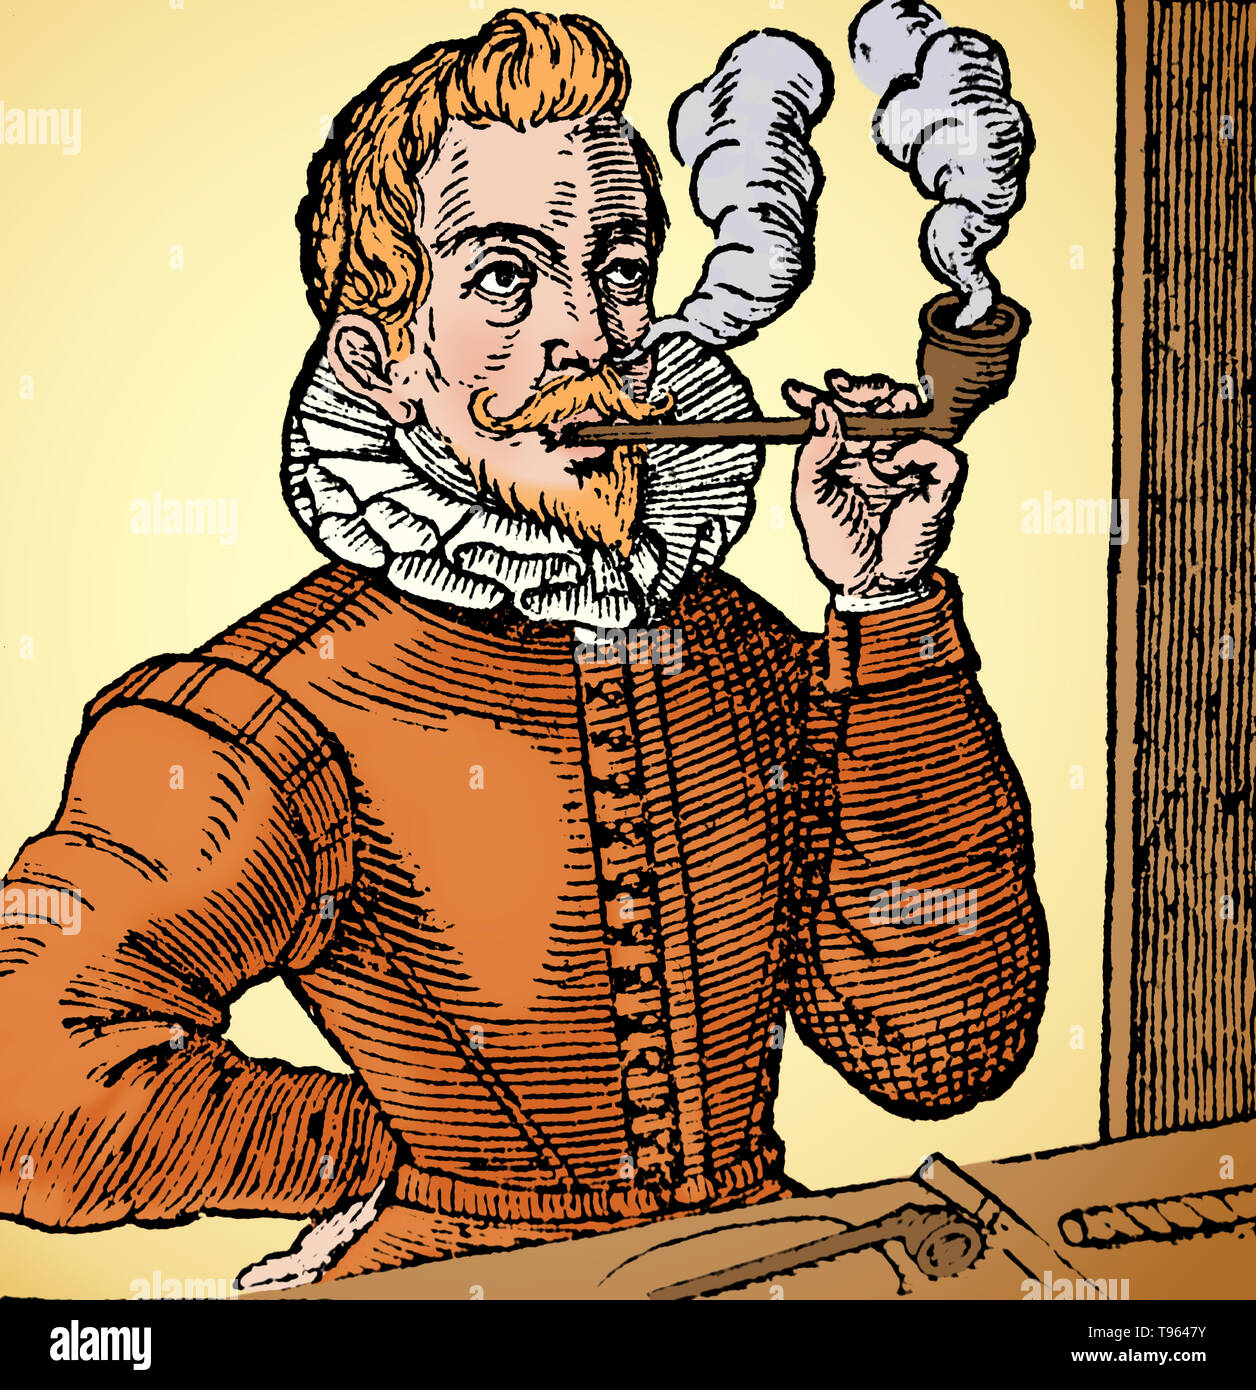 Ein Mann ist Rauchen eine langstielige Pfeife; ein anderes Rohr und einer Zigarette auf einem Tisch vor ihm. Gravur von "Een Korte beschrijvinge van het wonderlijcke kruyt Tabak, Titelseite vignette', 1623. Diese Gravur ist die erste bekannte Bild eines Mannes mit einer Rohrleitung, die ursprünglich im Anthony's Rutsche Tabaco, 1595 erschienen. Dieses Bild hat Farbe verbessert. Stockfoto